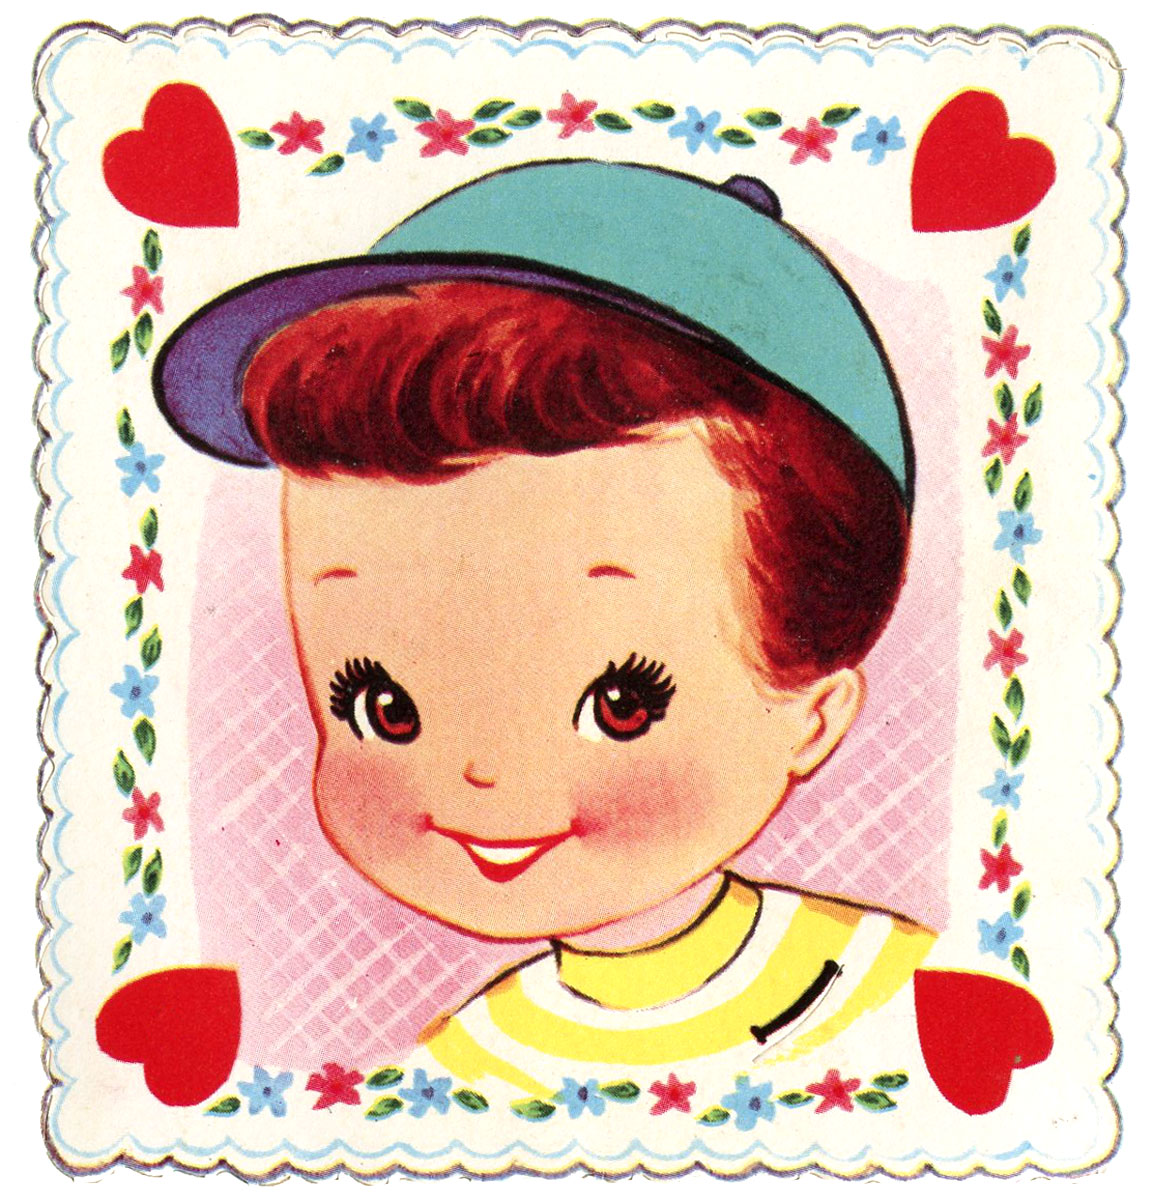 Retro Valentine Graphic   Cute Little Boy   The Graphics Fairy